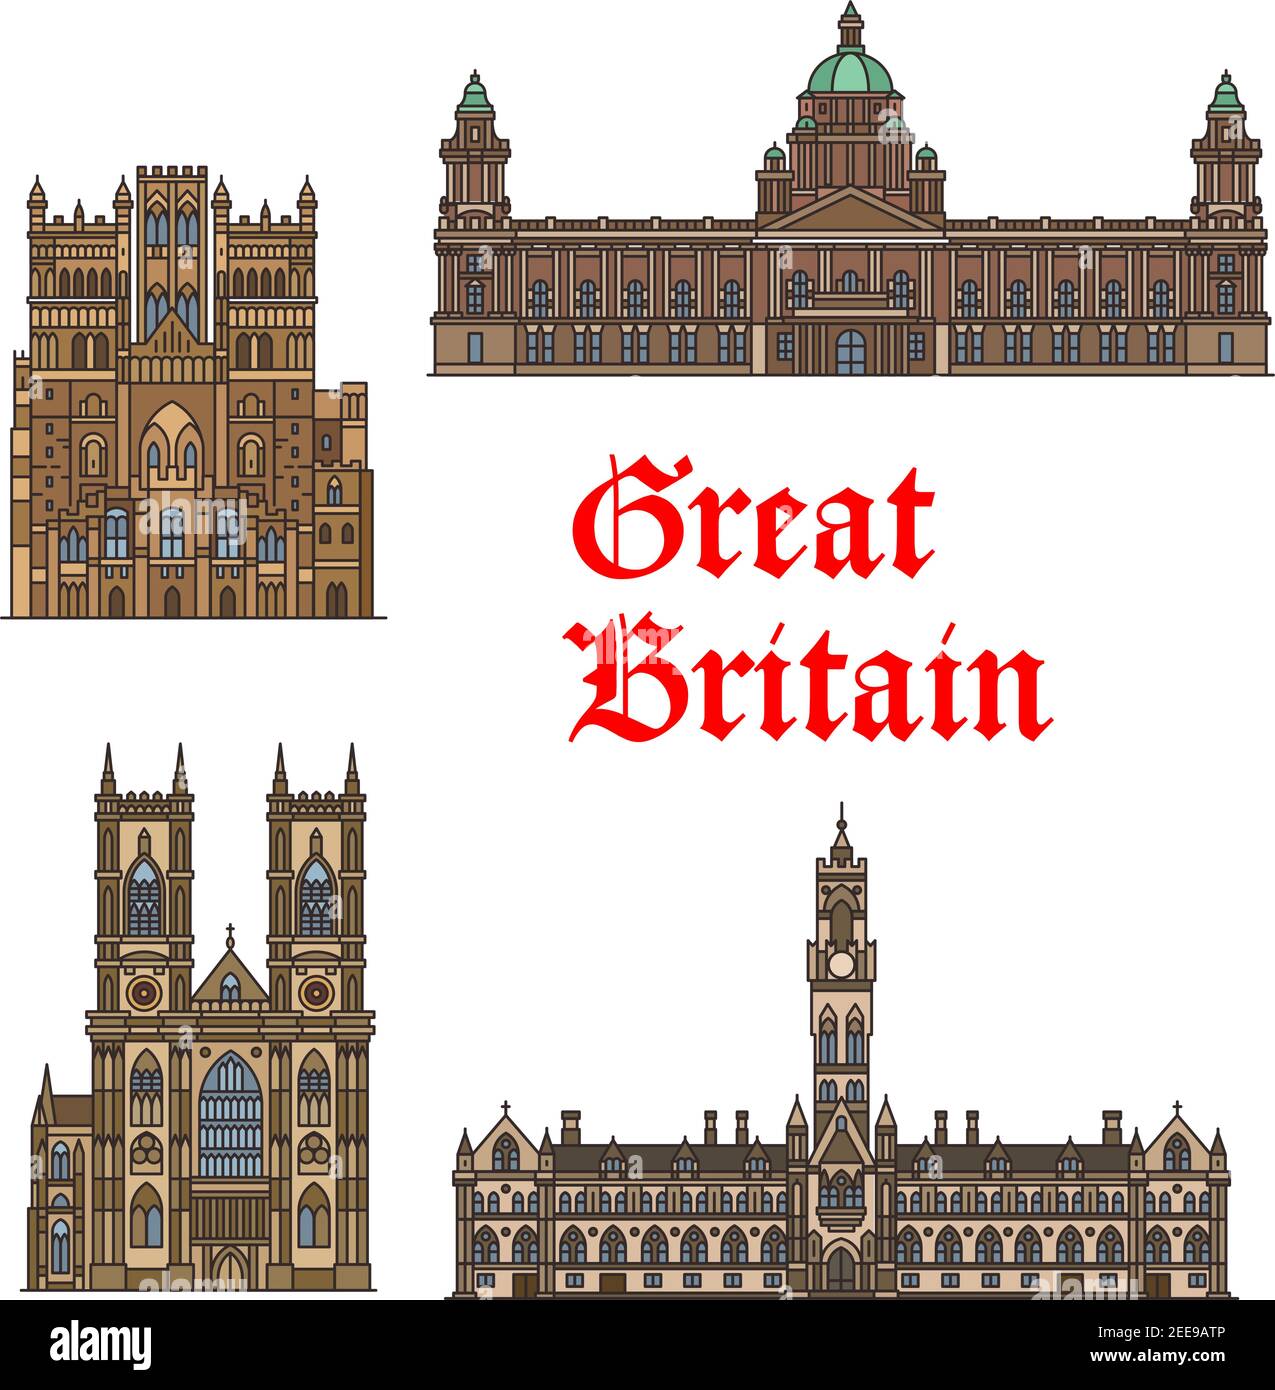 Englisches travel Wahrzeichen von Großbritannien Ikone gesetzt. Gotische Kirche Westminster Abbey, Durham Cathedral, Bradford City Hall und Belfast City Hall Thin li Stock Vektor